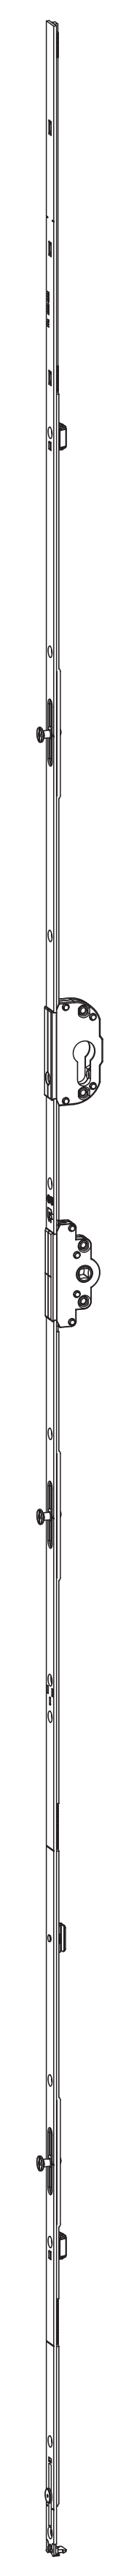 GU-ITALIA -  Cremonese UNI-JET anta ribalta altezza maniglia fissa con foro cilindro sopra la maniglia e quadro - gr / dim. 2190 - entrata 35 - alt. man. 950 - lbb/hbb 1851-2100